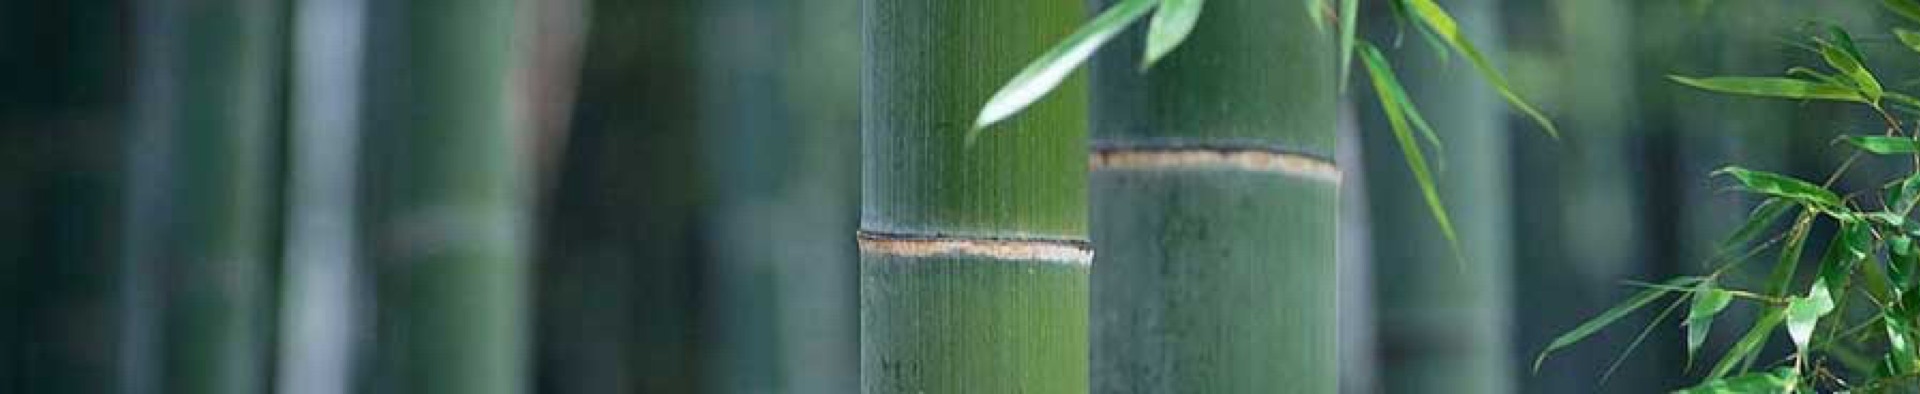 Taikiken bamboo green top banner